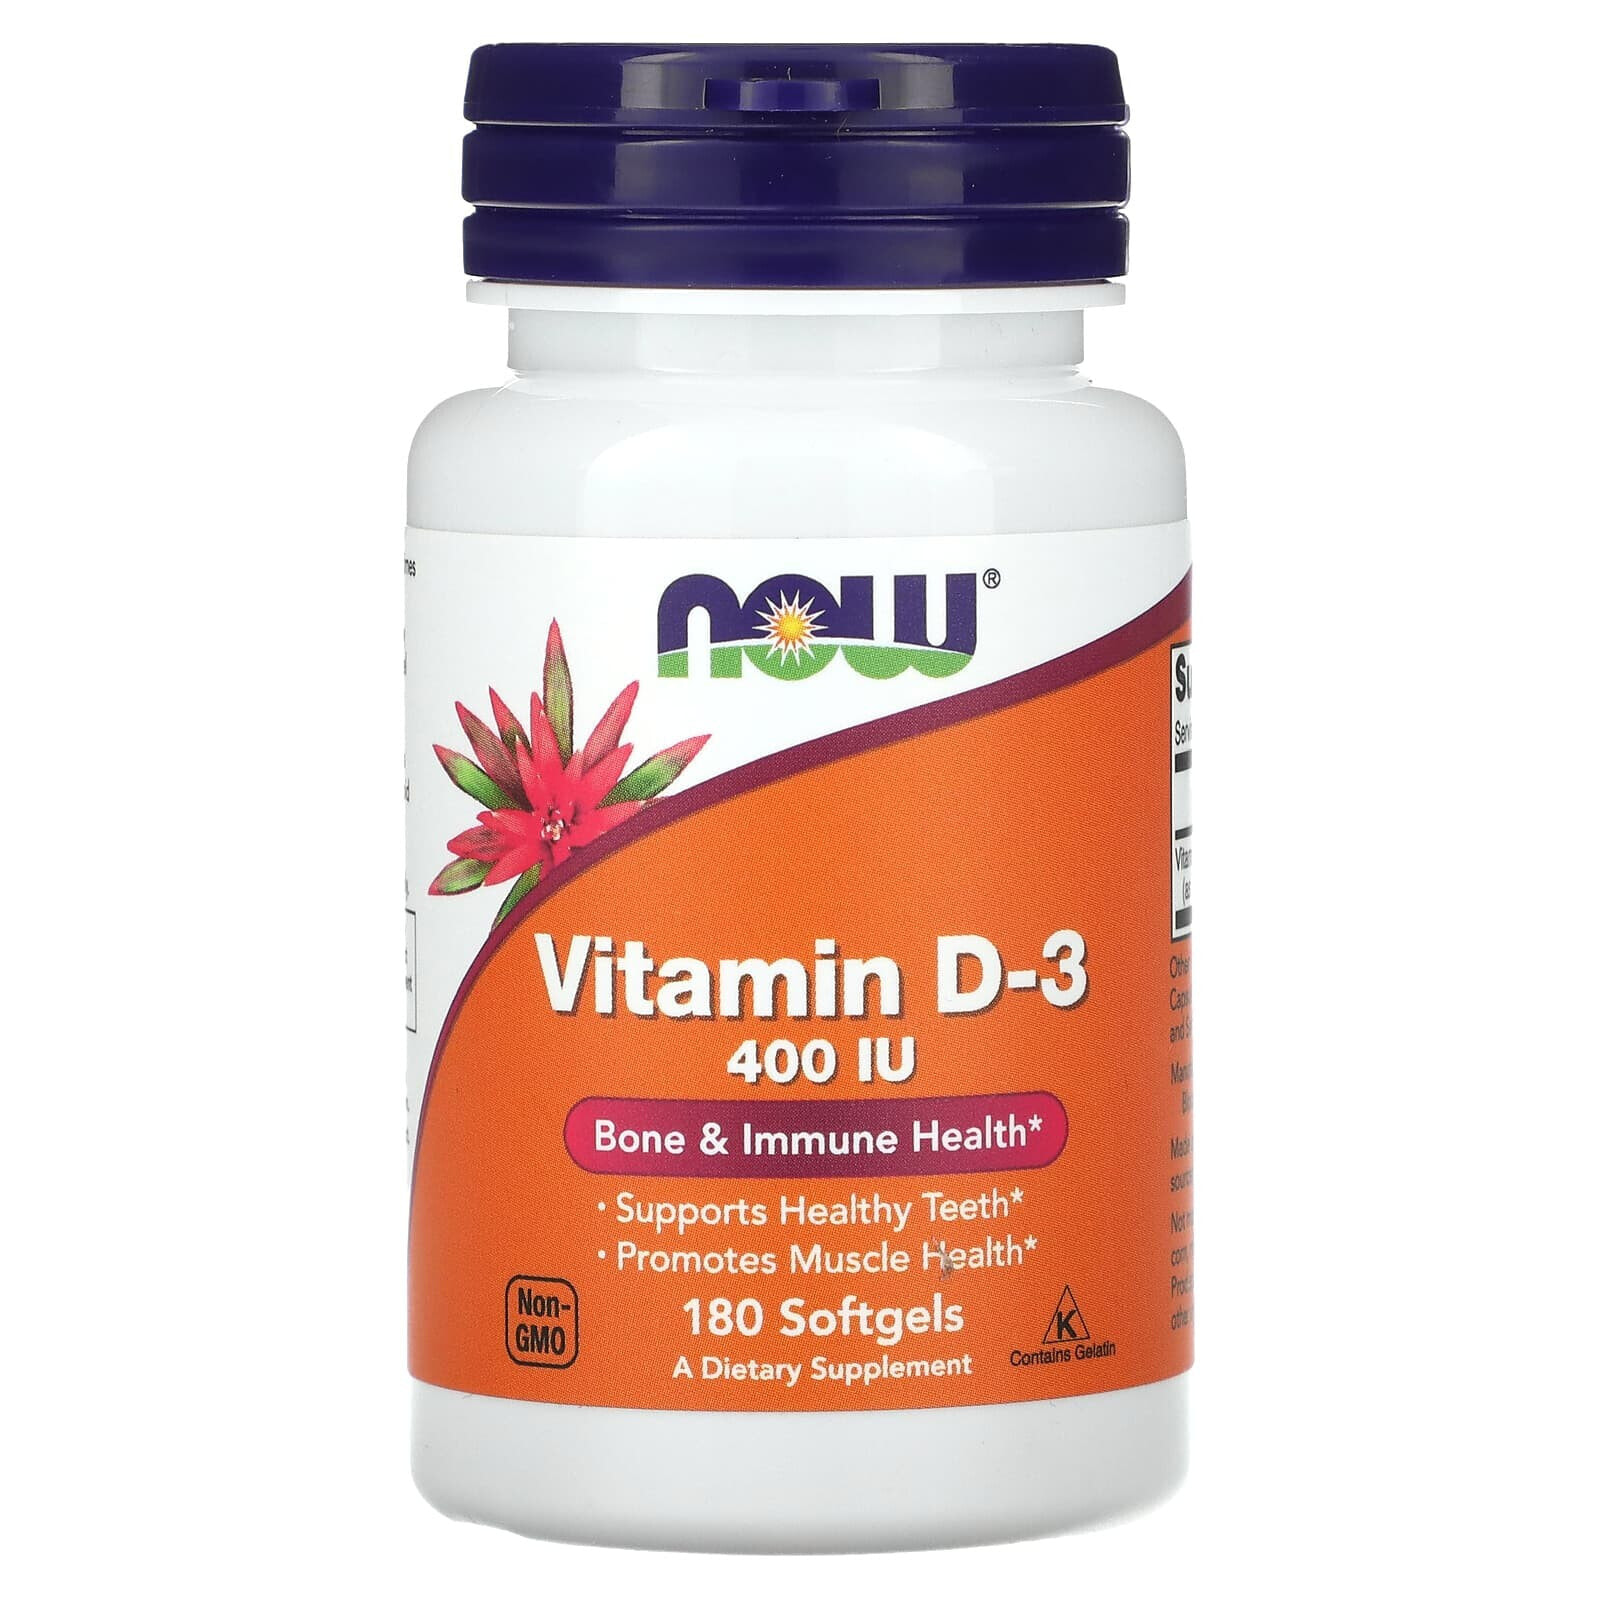 Vitamin D-3, 400 IU, 180 Softgels